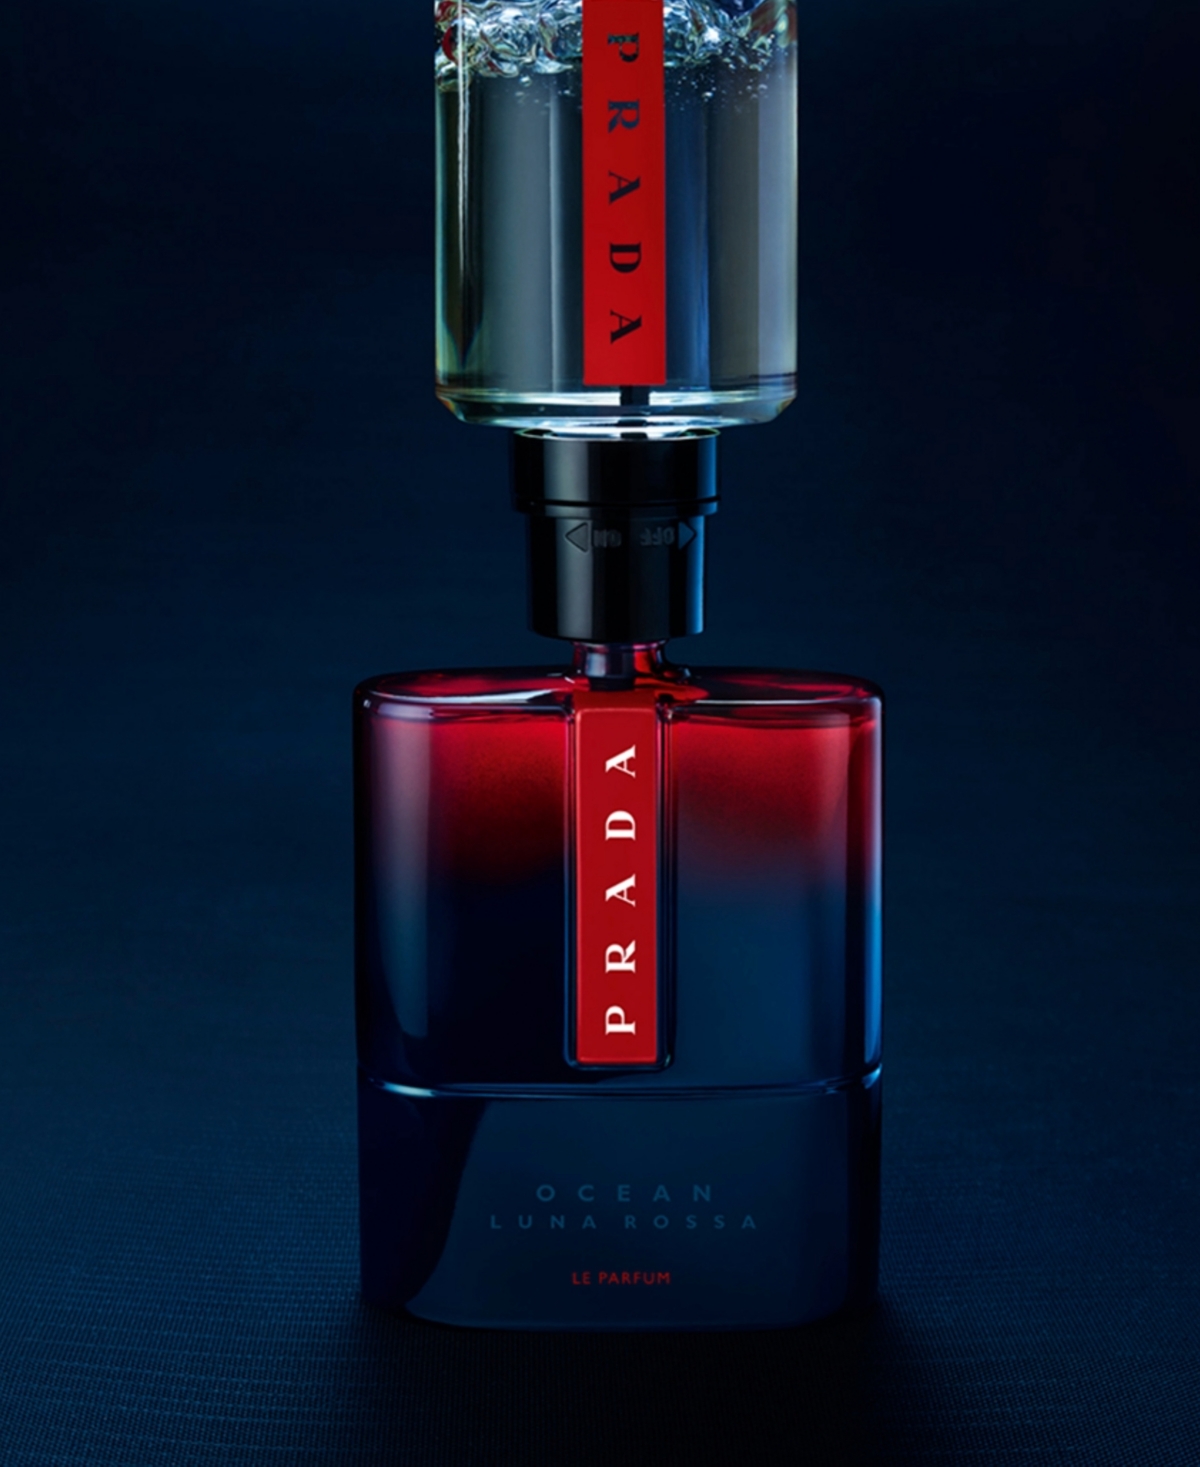 Shop Prada Men's Luna Rossa Ocean Le Parfum Spray, 3.3 Oz. In No Color